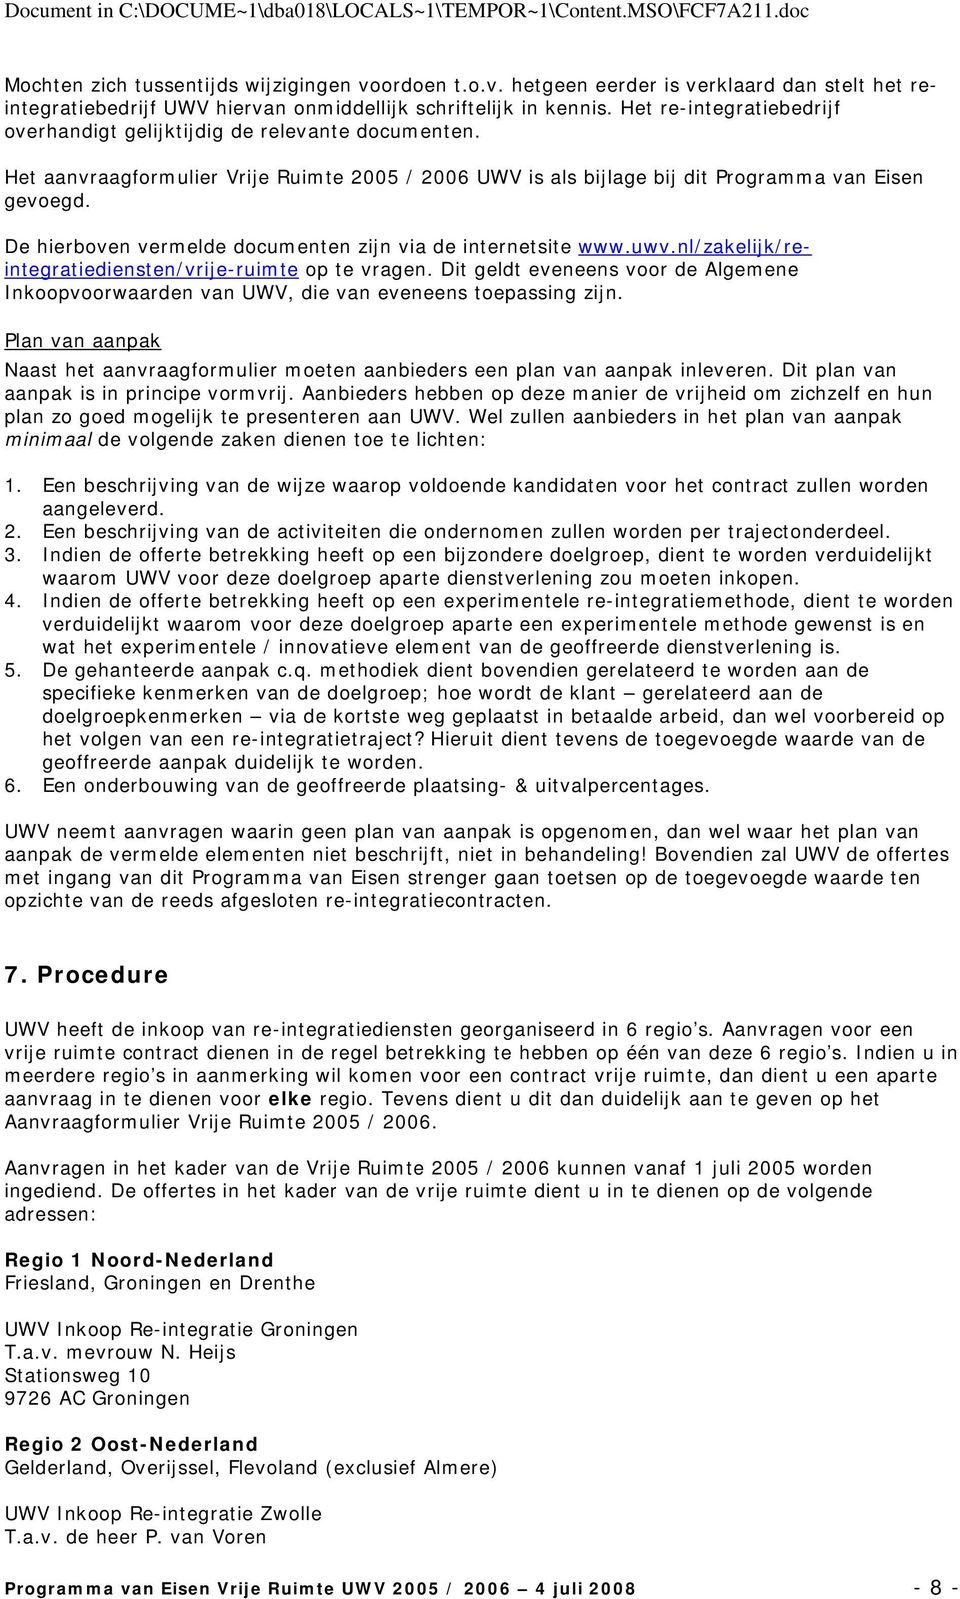 De hierboven vermelde documenten zijn via de internetsite www.uwv.nl/zakelijk/reintegratiediensten/vrije-ruimte op te vragen.